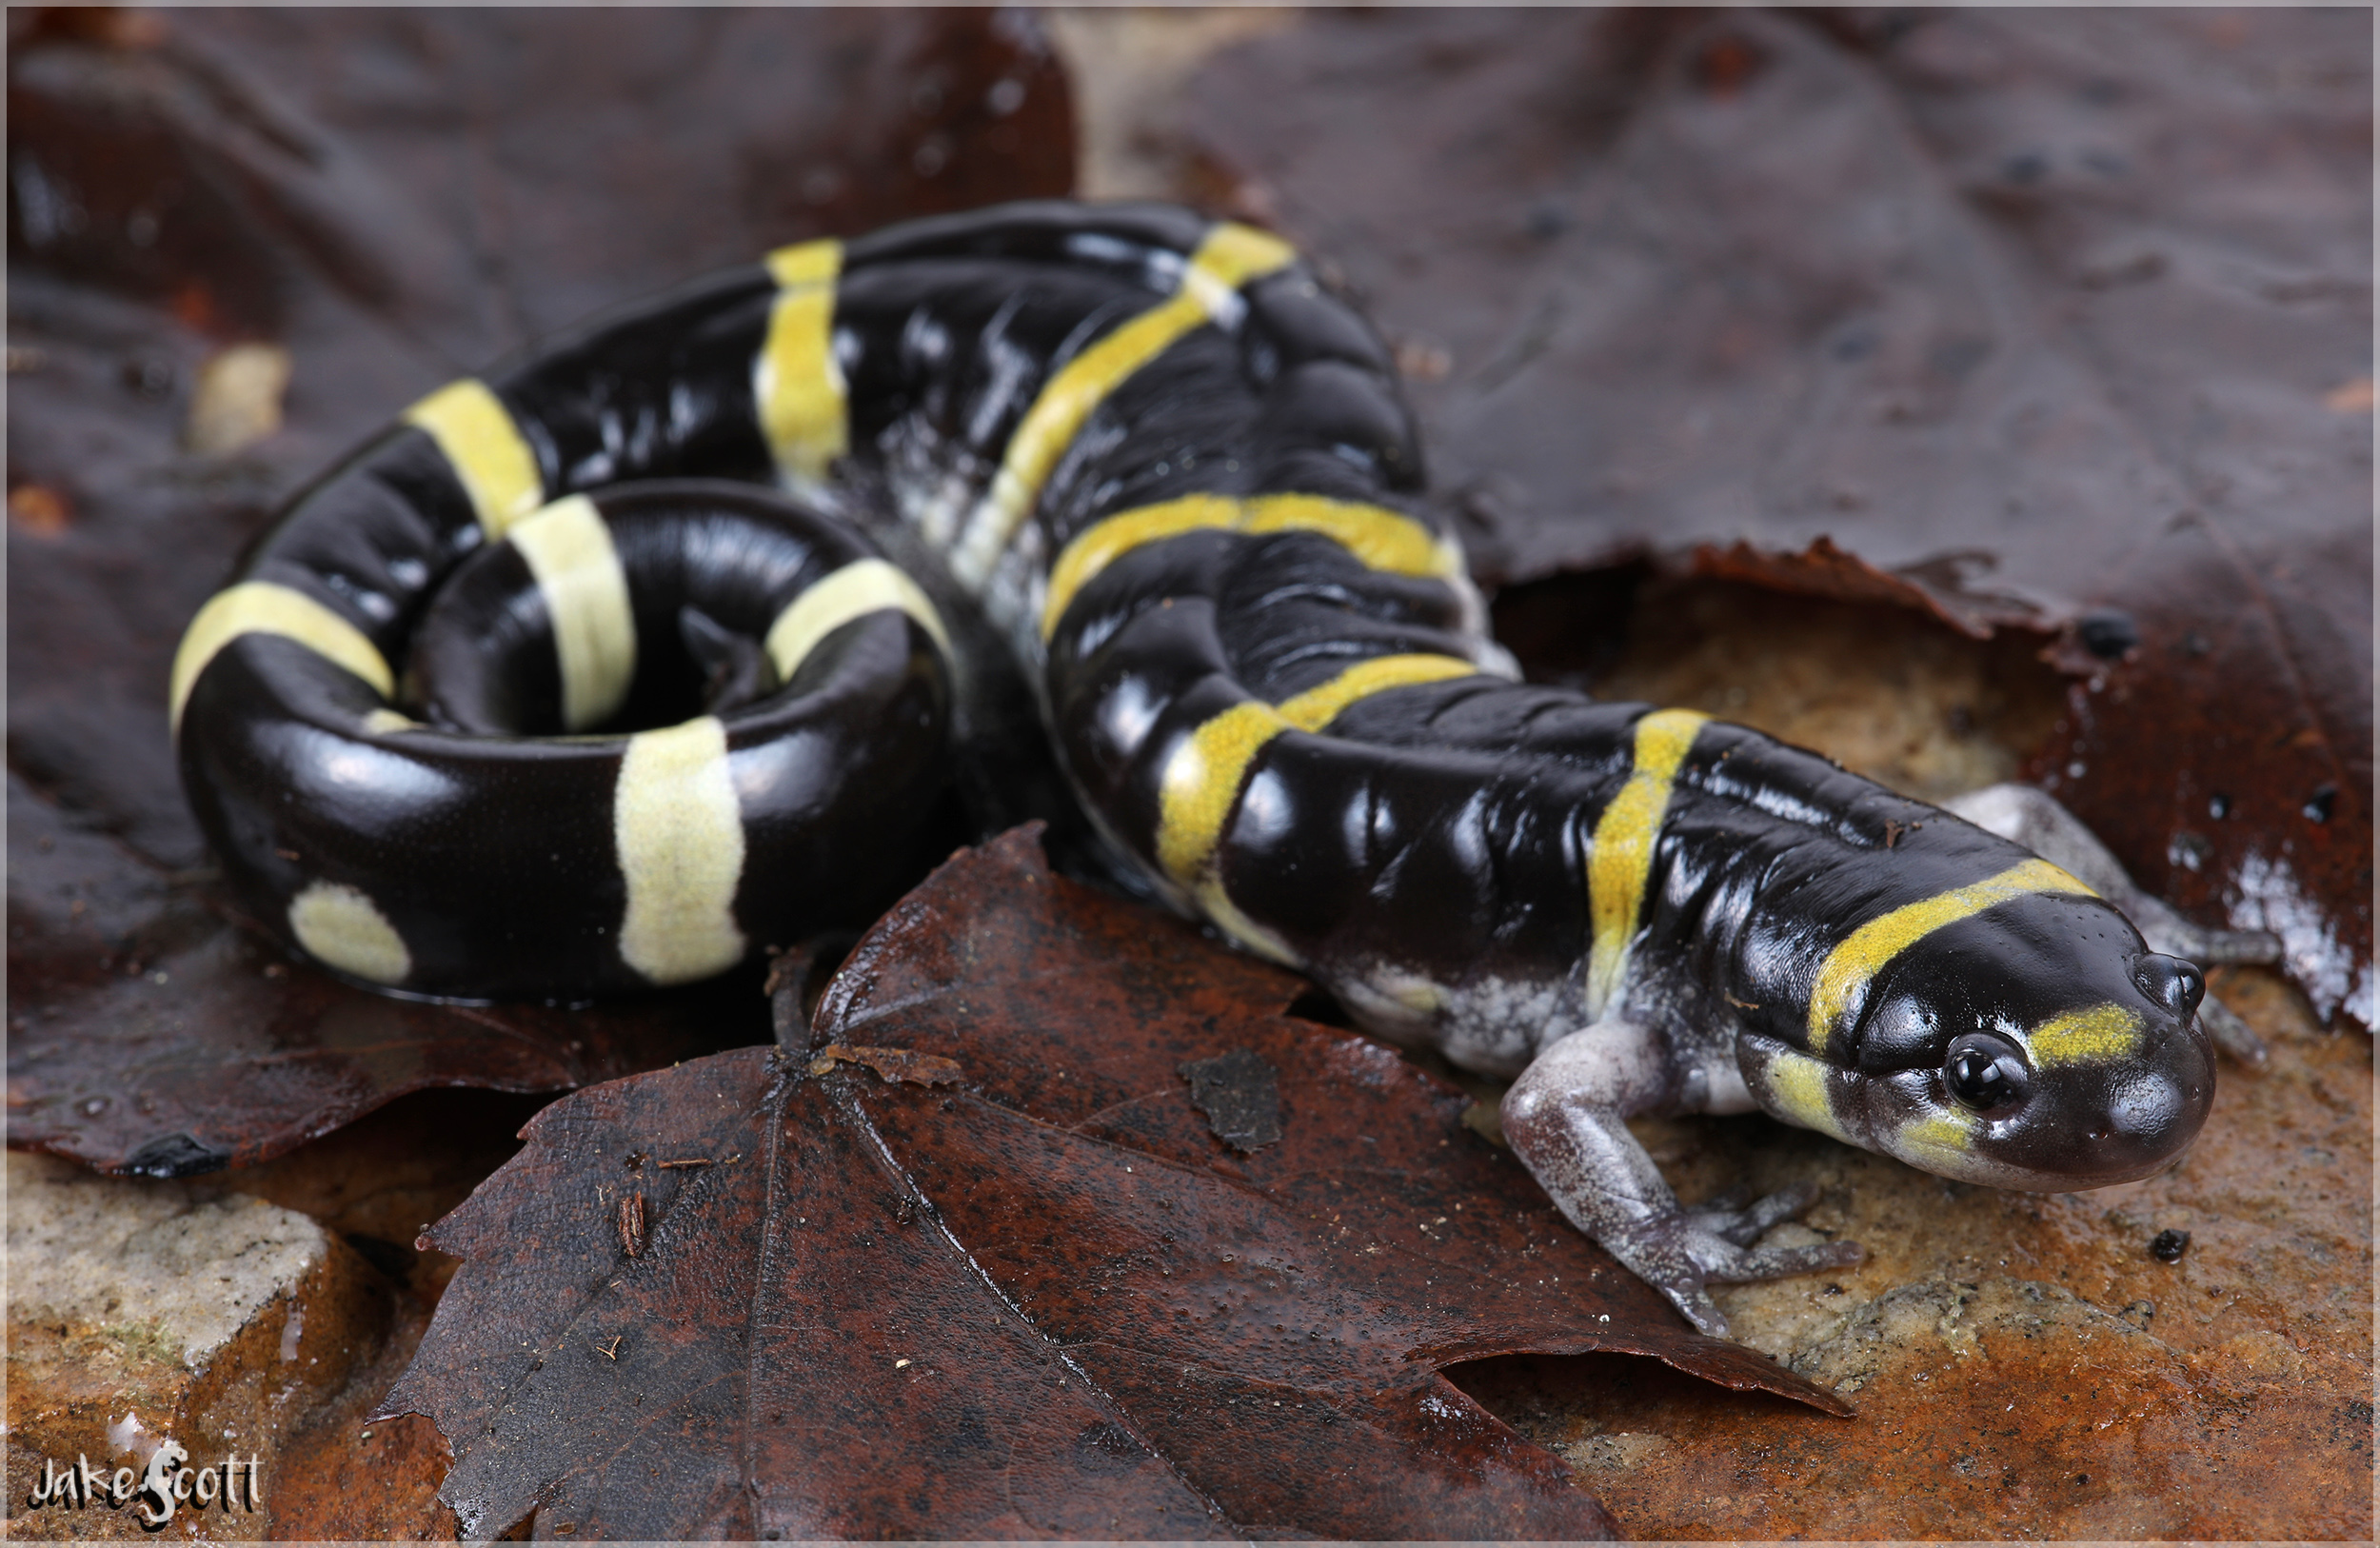 Ringed Salamander (Ambystoma annulatum)